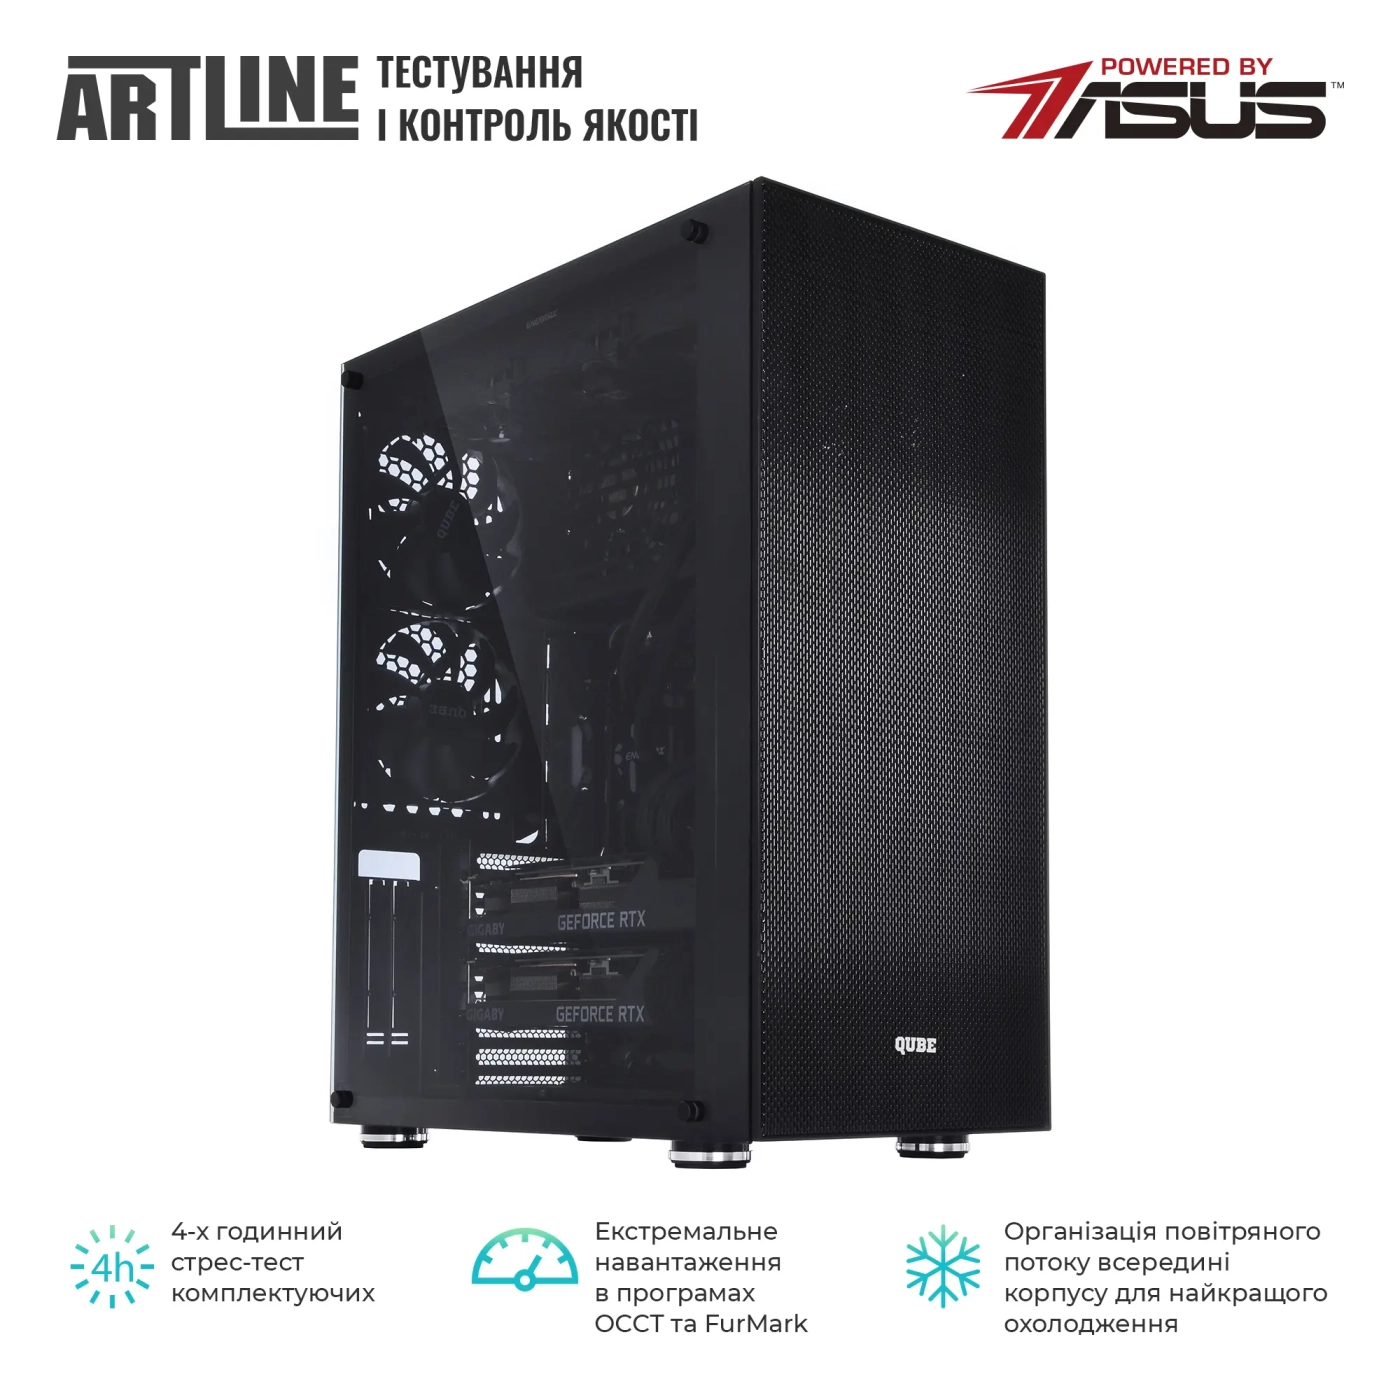 Купить Сервер ARTLINE Business T85v11 - фото 8